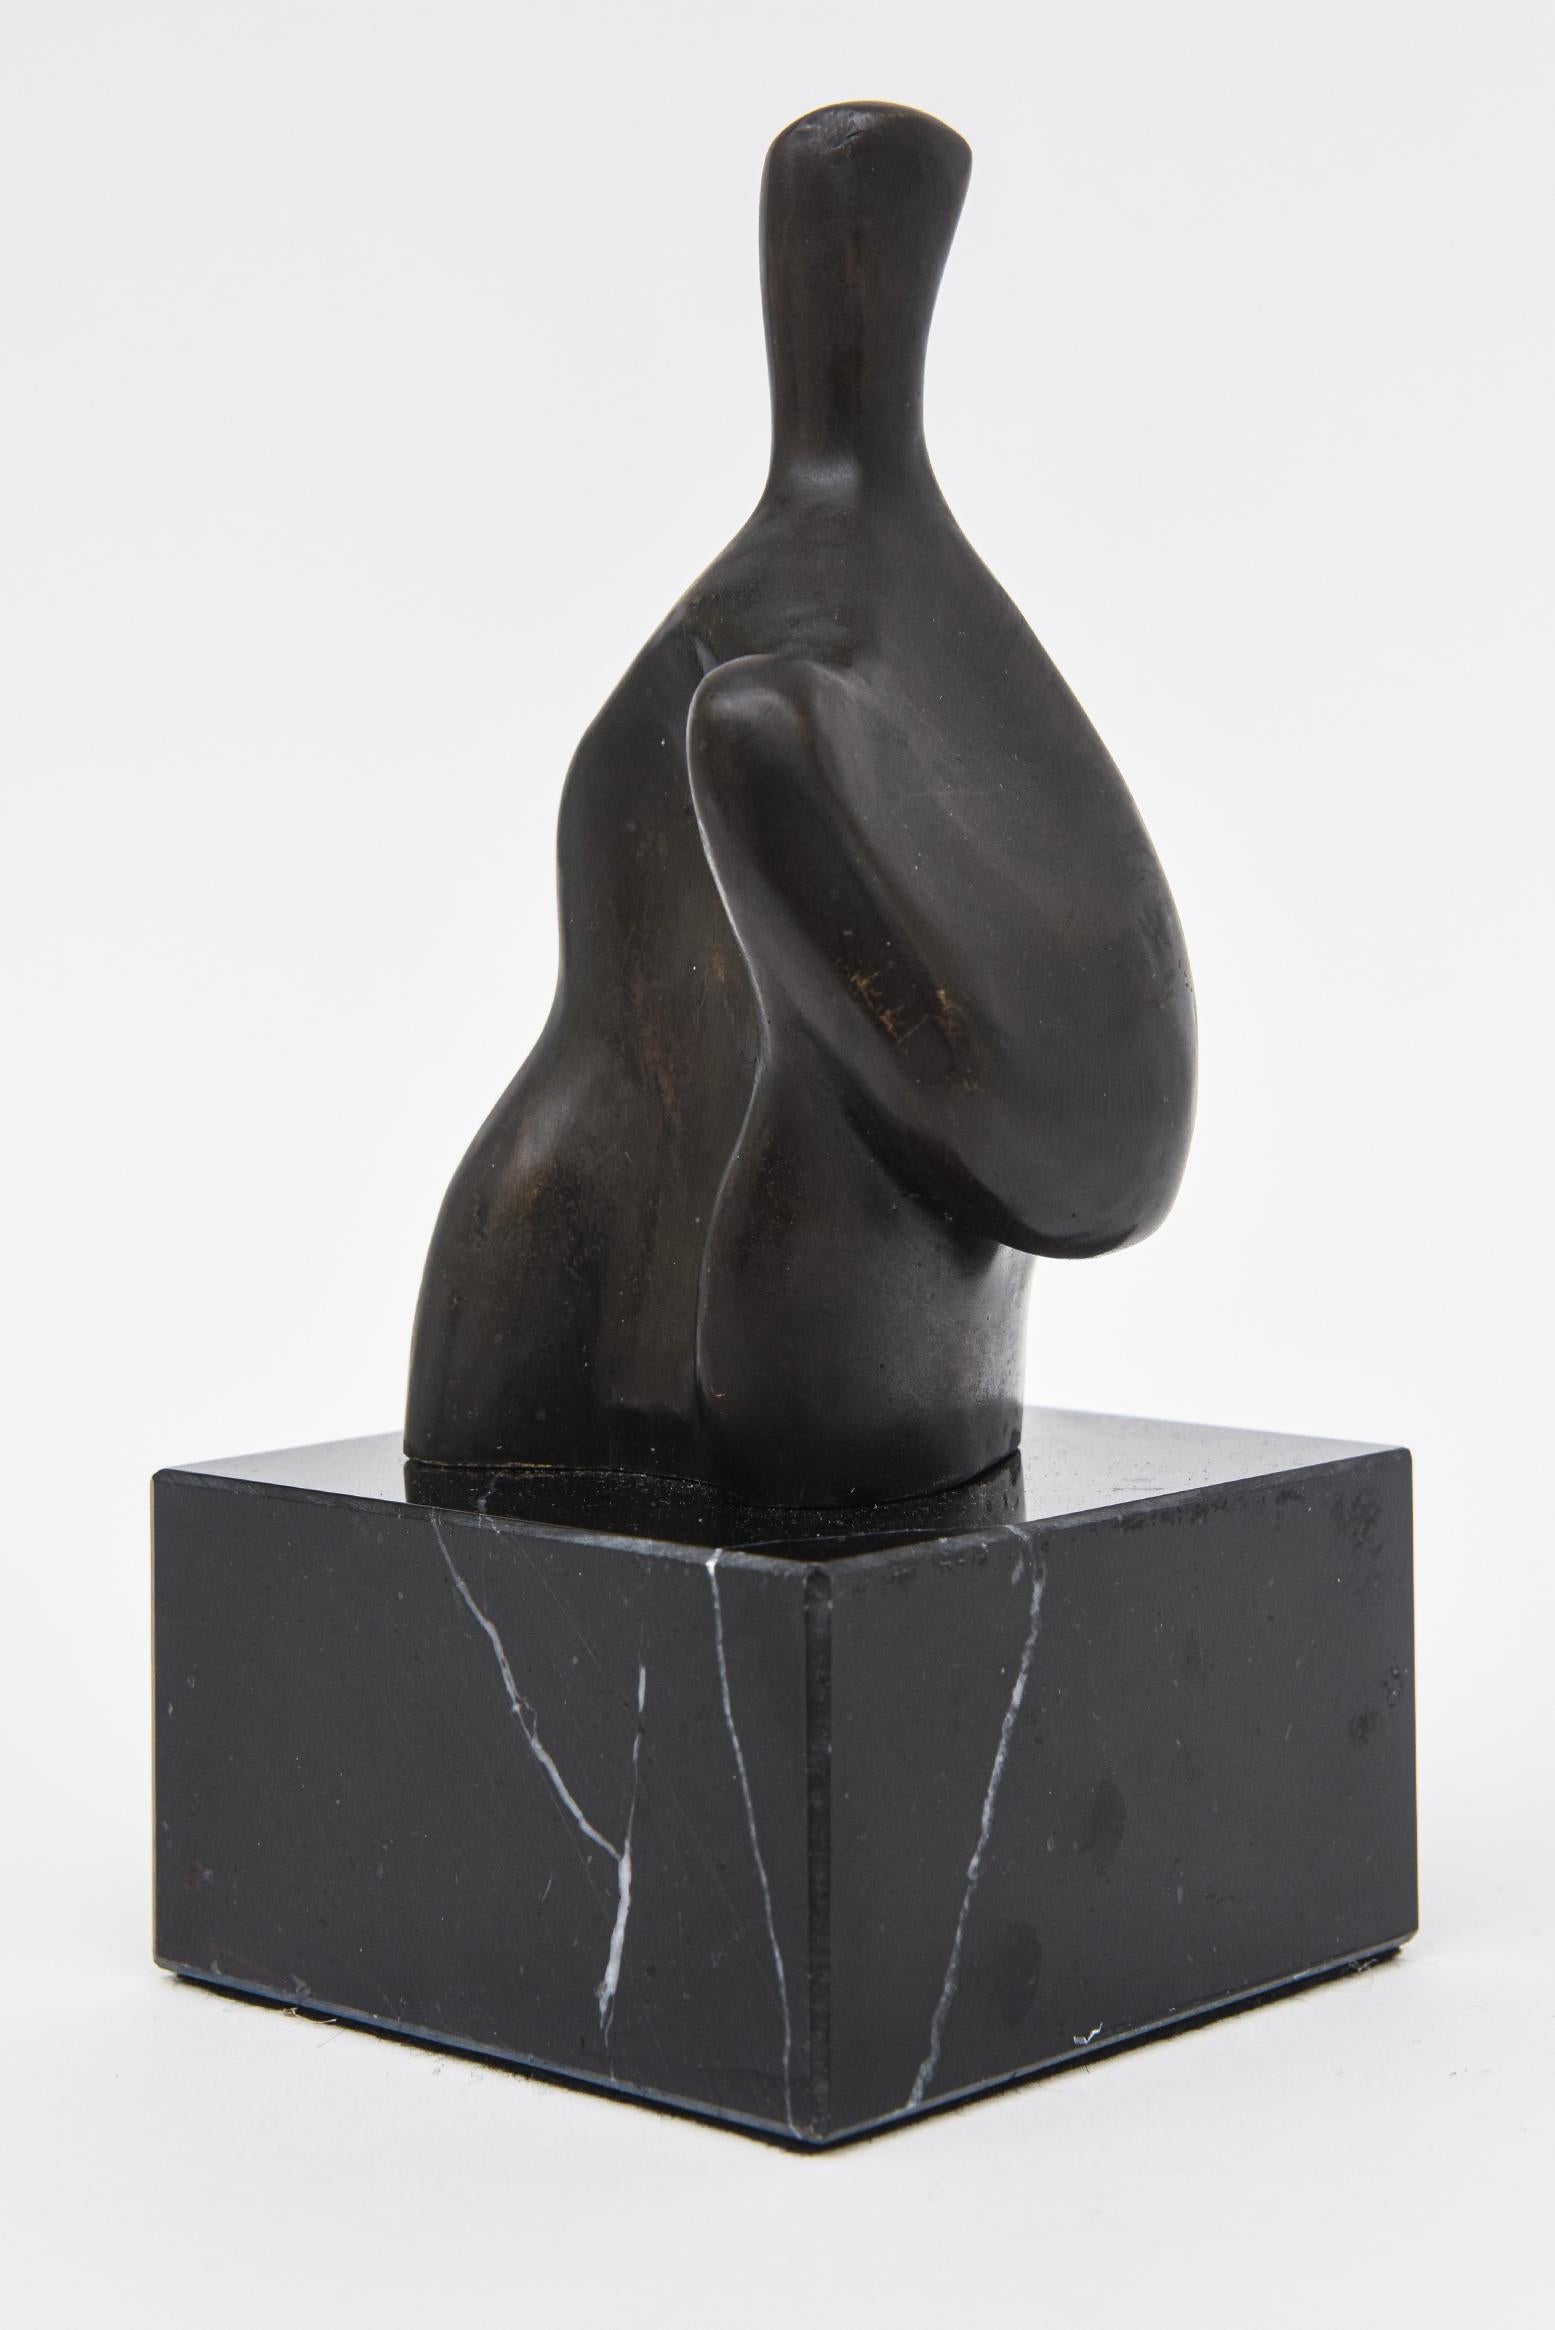 Cette sculpture figurative abstraite unique en bronze vintage est sur une base en marbre noir veiné elle n'est pas numérotée. Le style rappelle et influence beaucoup celui d'un Henry Moore. Superbe petite sculpture de table comme accessoire de